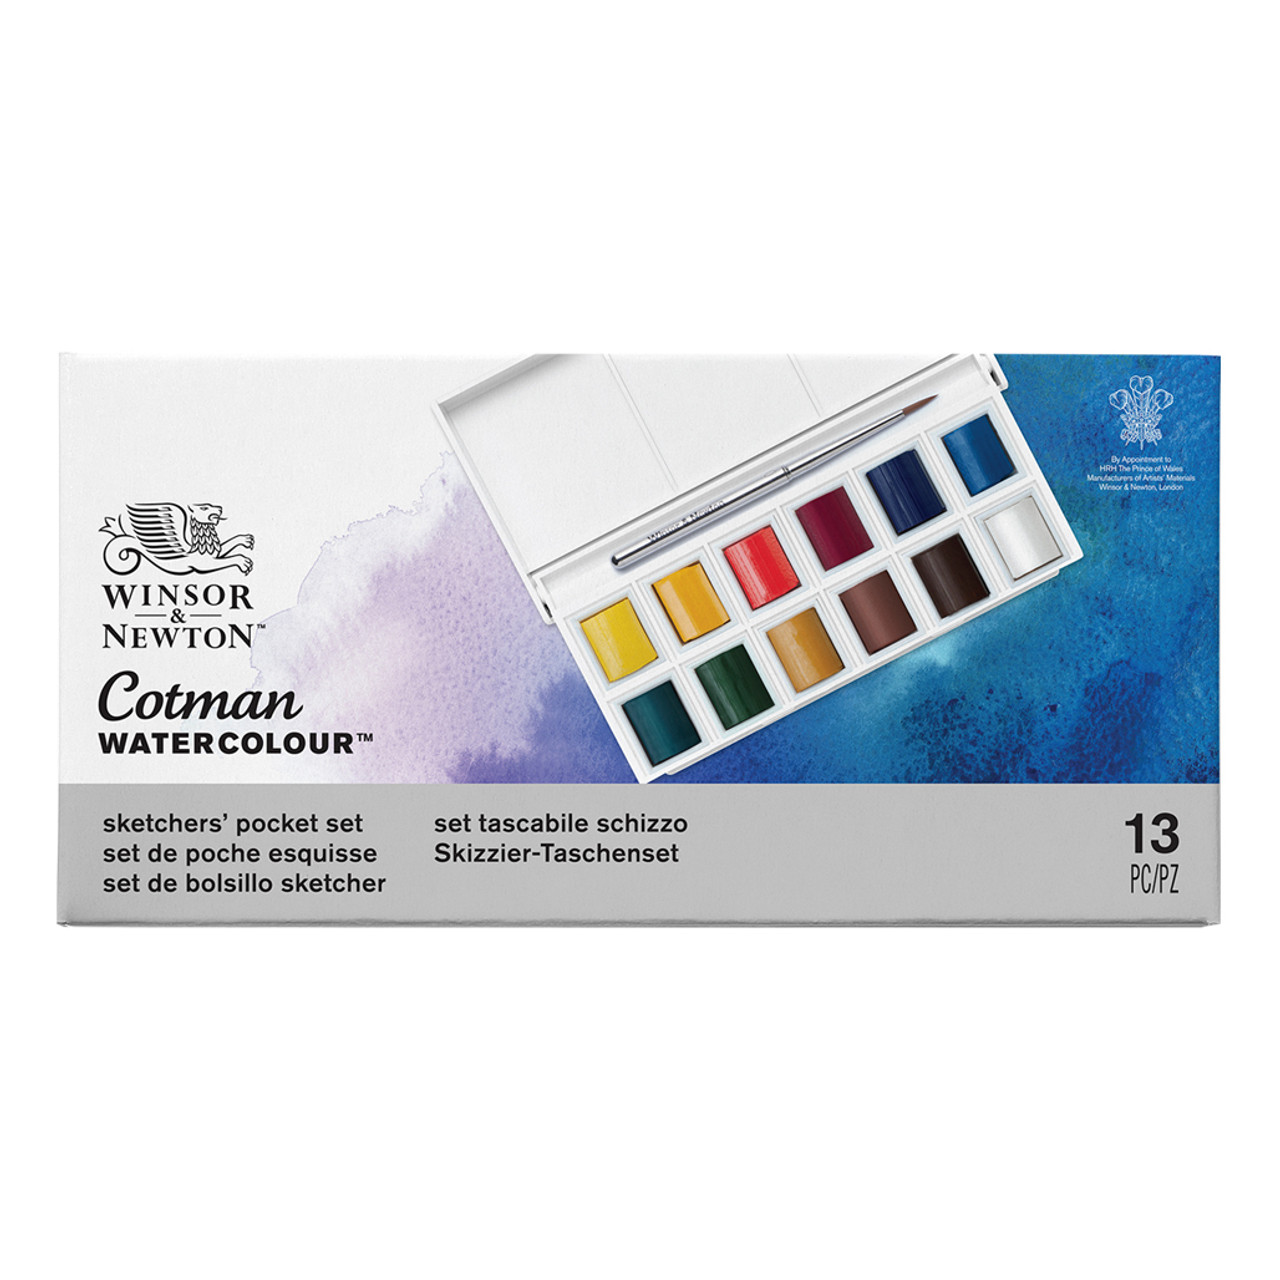 Winsor & Newton Cotman Watercolor Paint Set, Palette Pocket Set, 12 Half  Pans w/ Brush